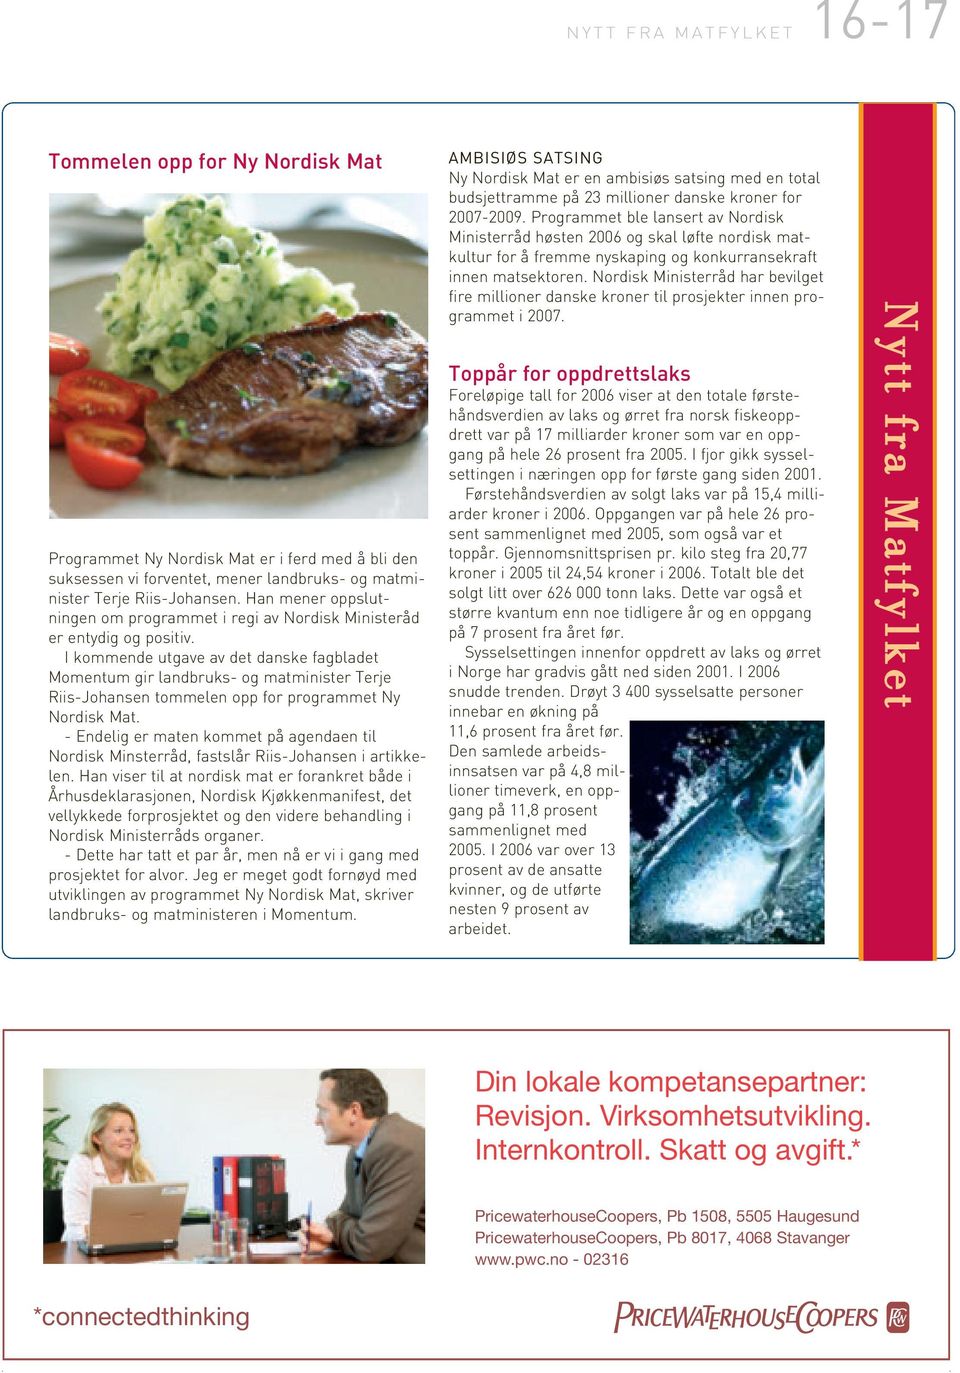 I kommende utgave av det danske fagbladet Momentum gir landbruks- og matminister Terje Riis-Johansen tommelen opp for programmet Ny Nordisk Mat.